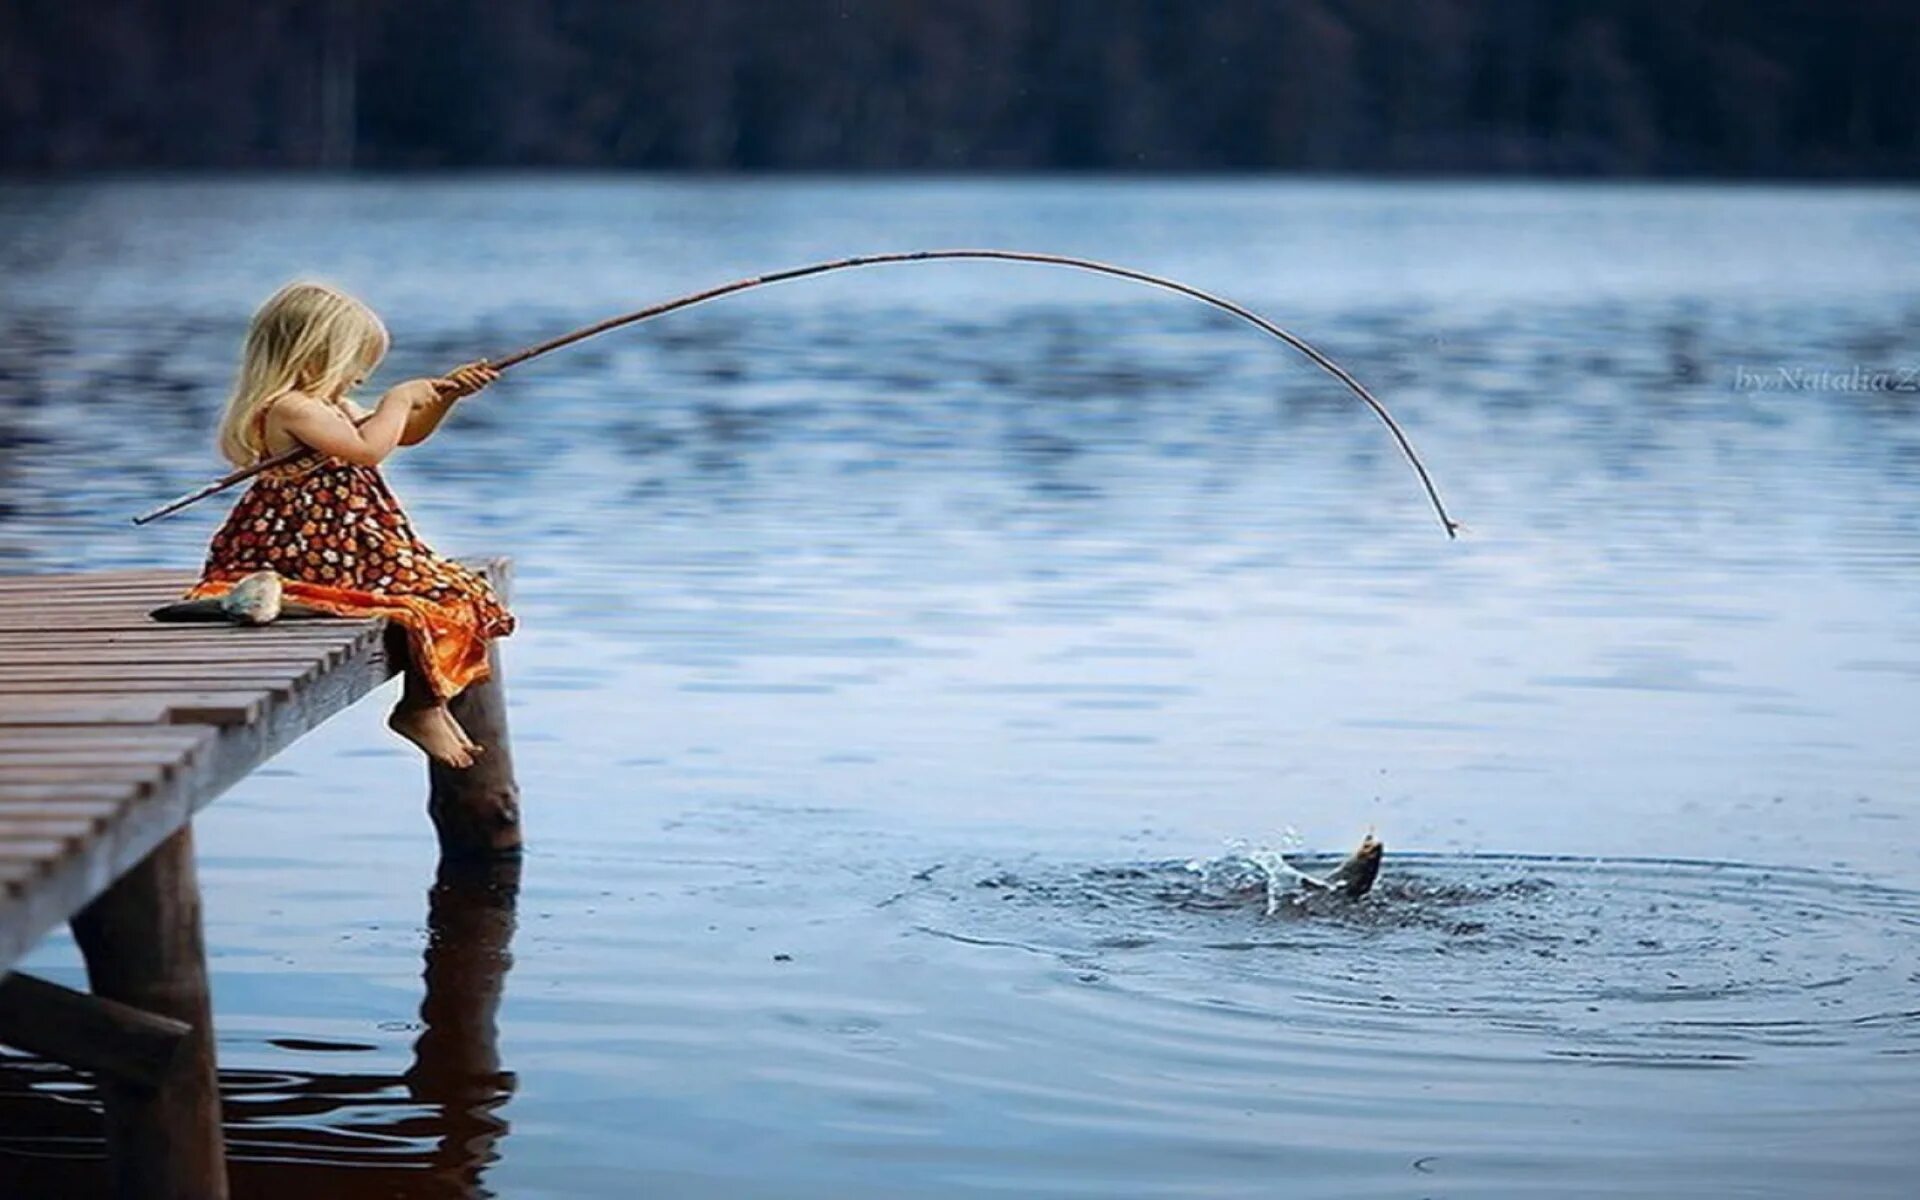 Рыбу удят удочкой. Девочка рыбачит. Девушка с удочкой. Девочка на рыбе с удочкой. Девочки на рыбалке.